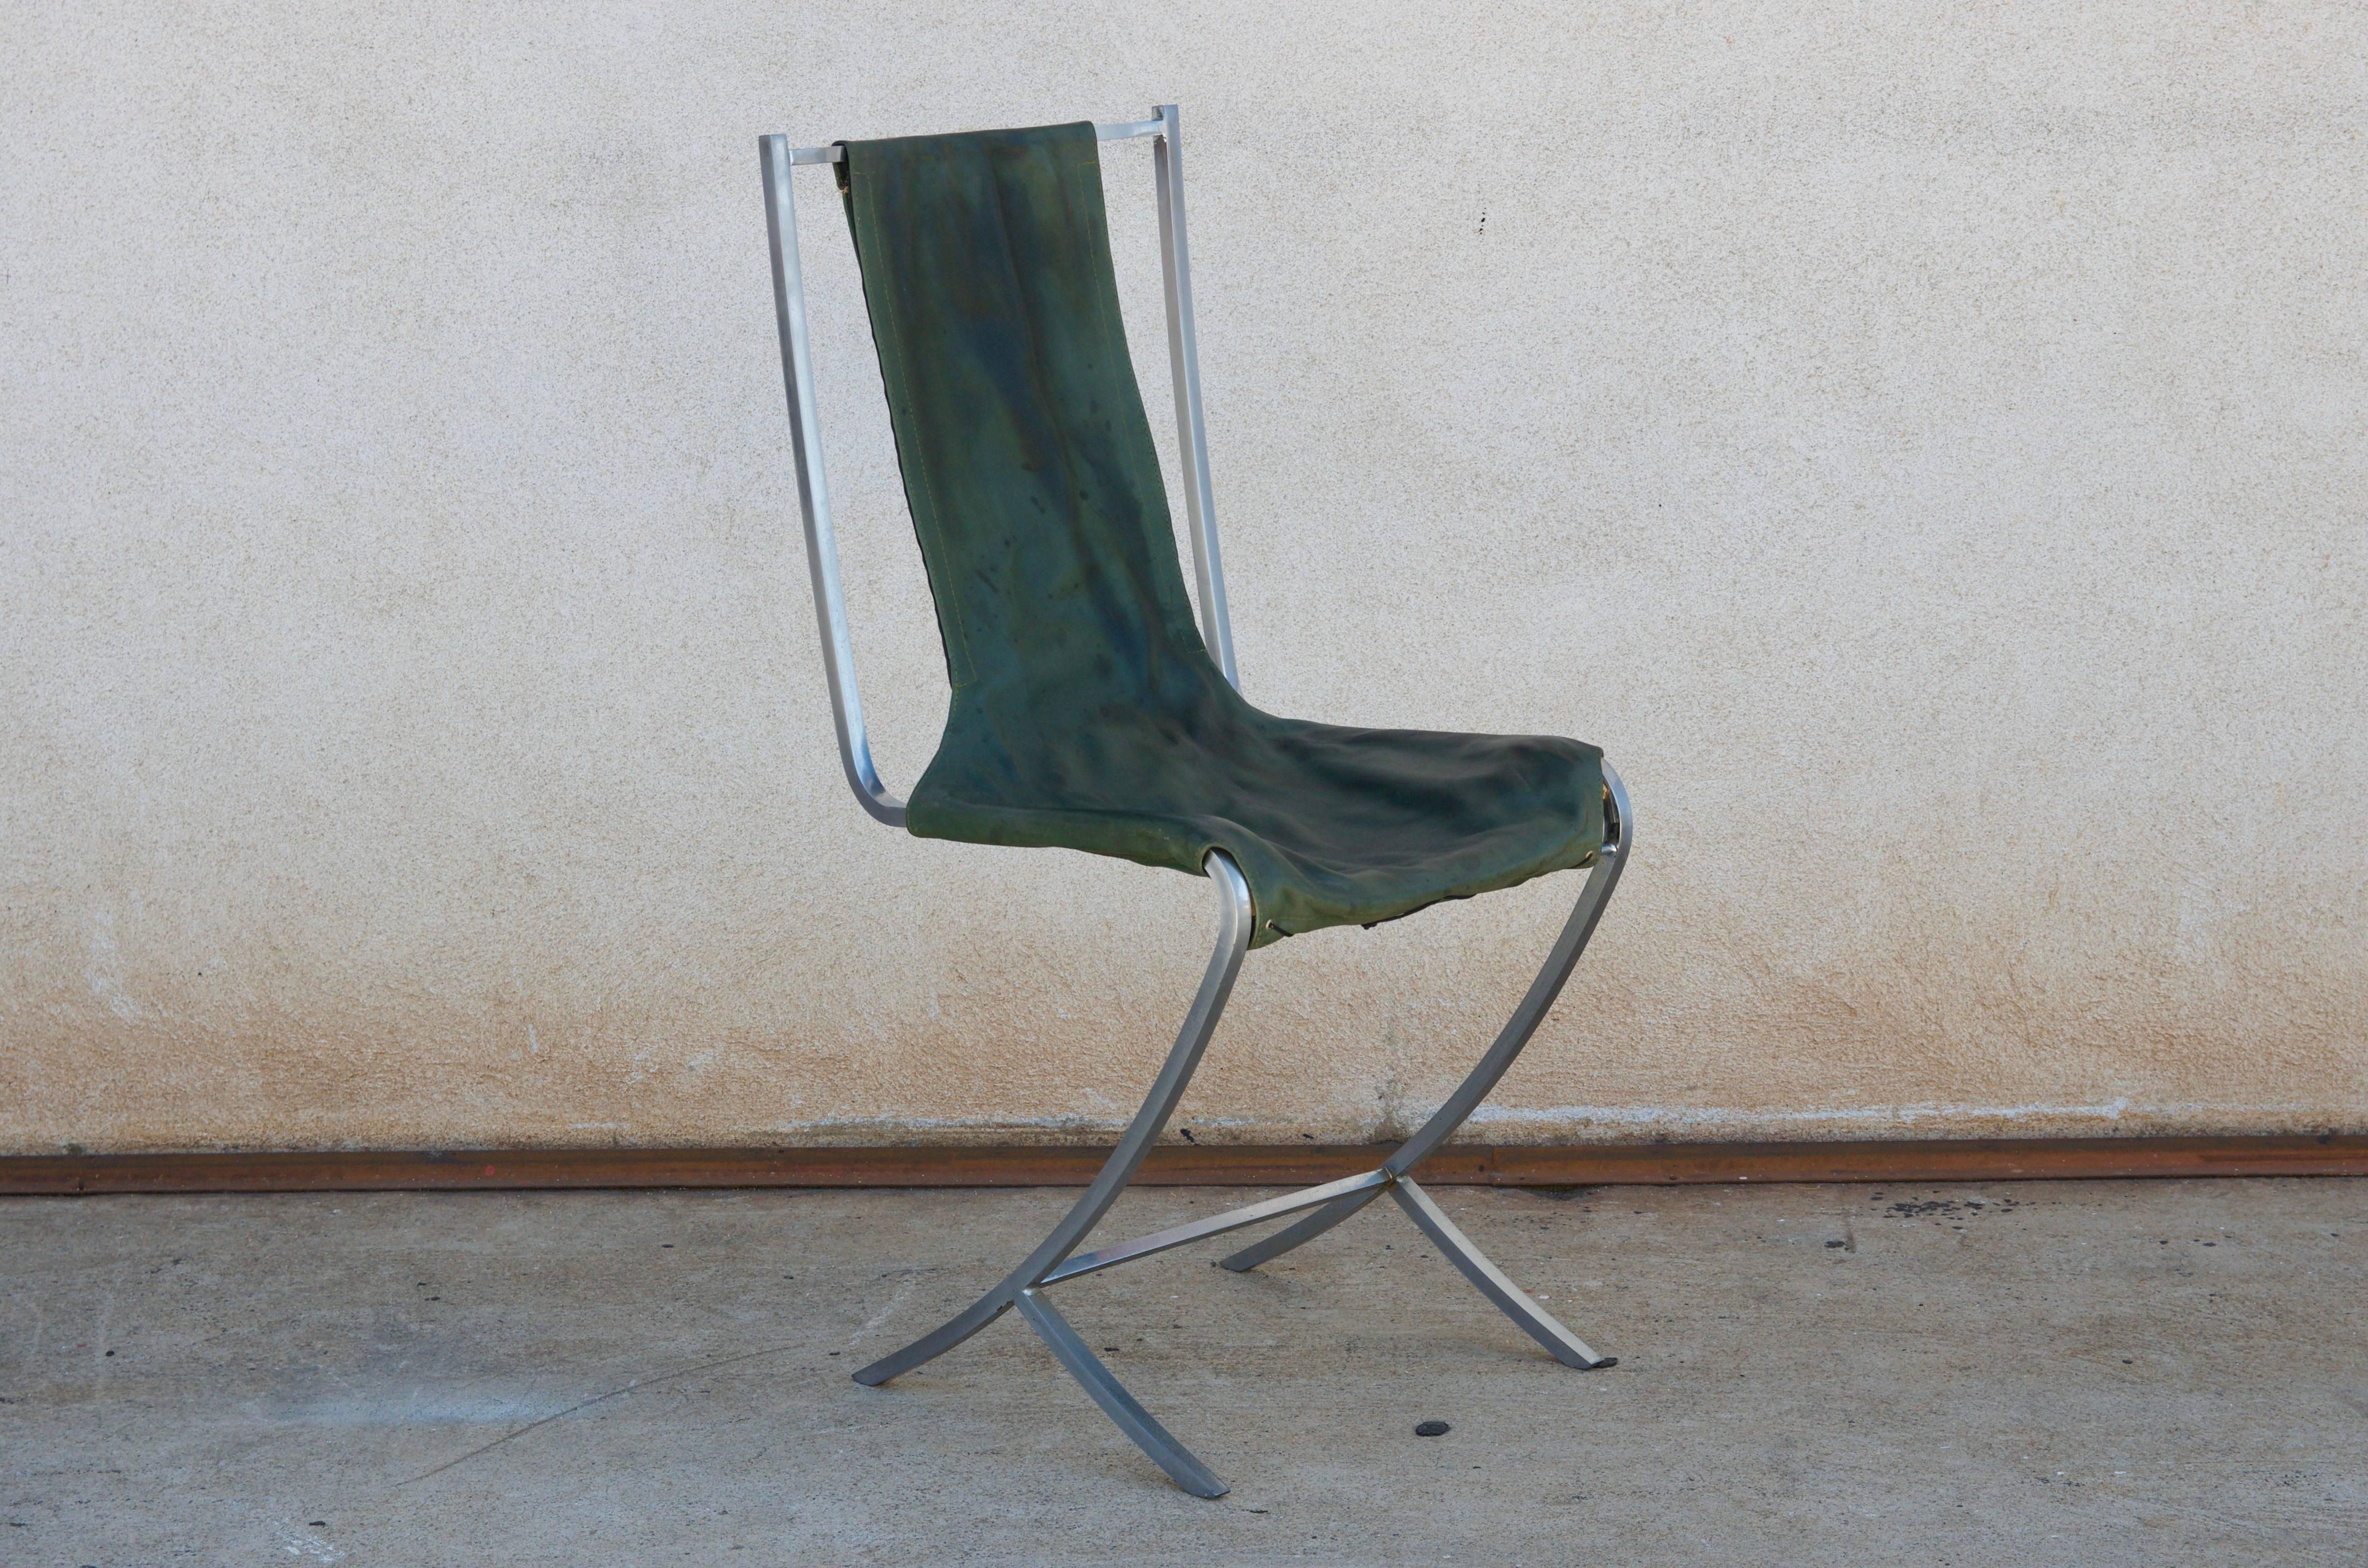 Seltener Satz von fünf Stühlen aus Edelstahl (acier inoxydable) von Maison Jansen. Hergestellt von Usinox. Originale grüne Ledersitz- und Rückenbezüge, die durch C.O.M. ersetzt werden müssen (6 Meter).

Hervorragend geeignet als Fünfer-Set für